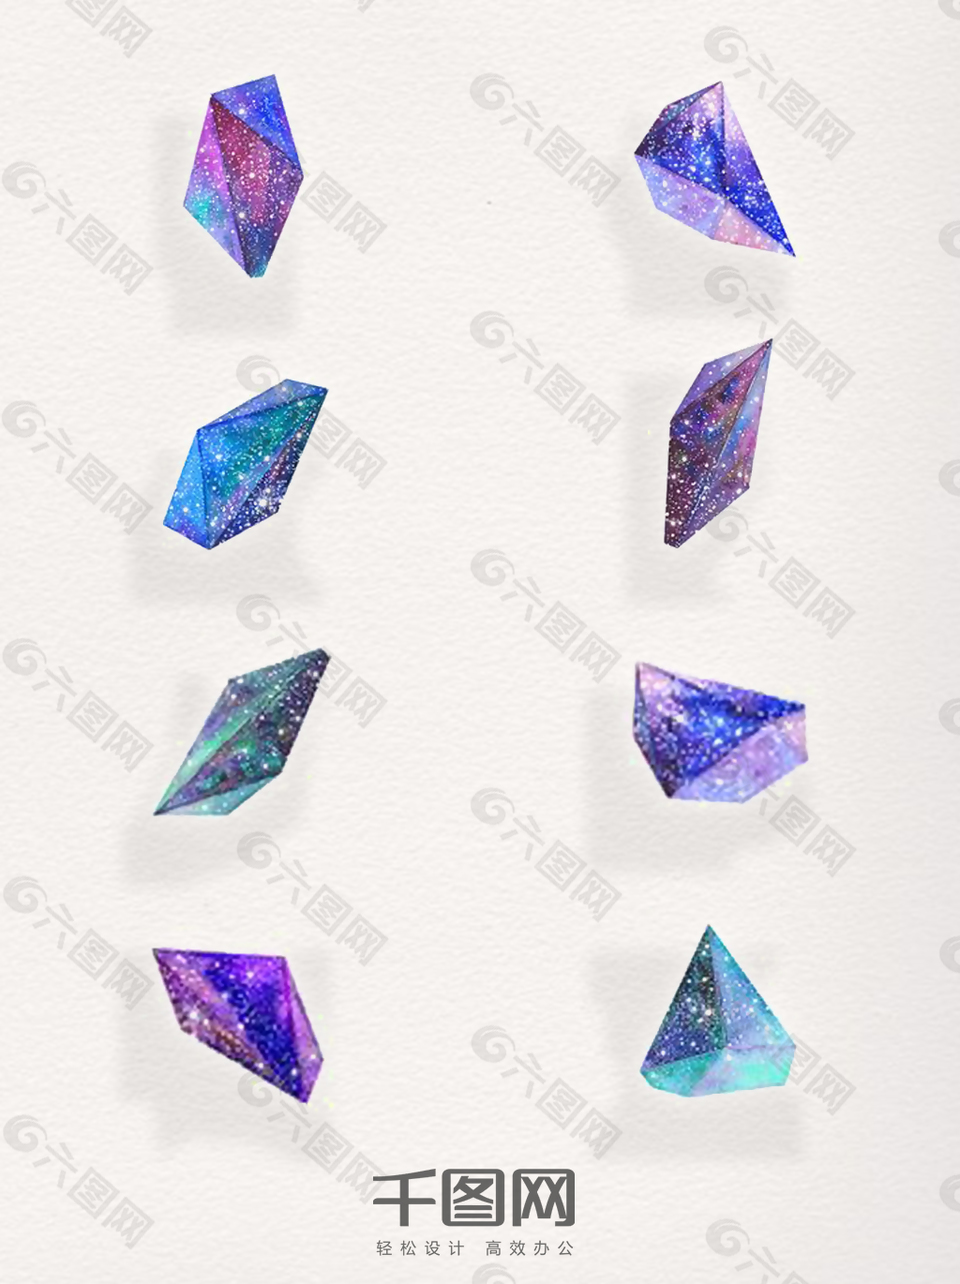 一组星空钻石设计素材